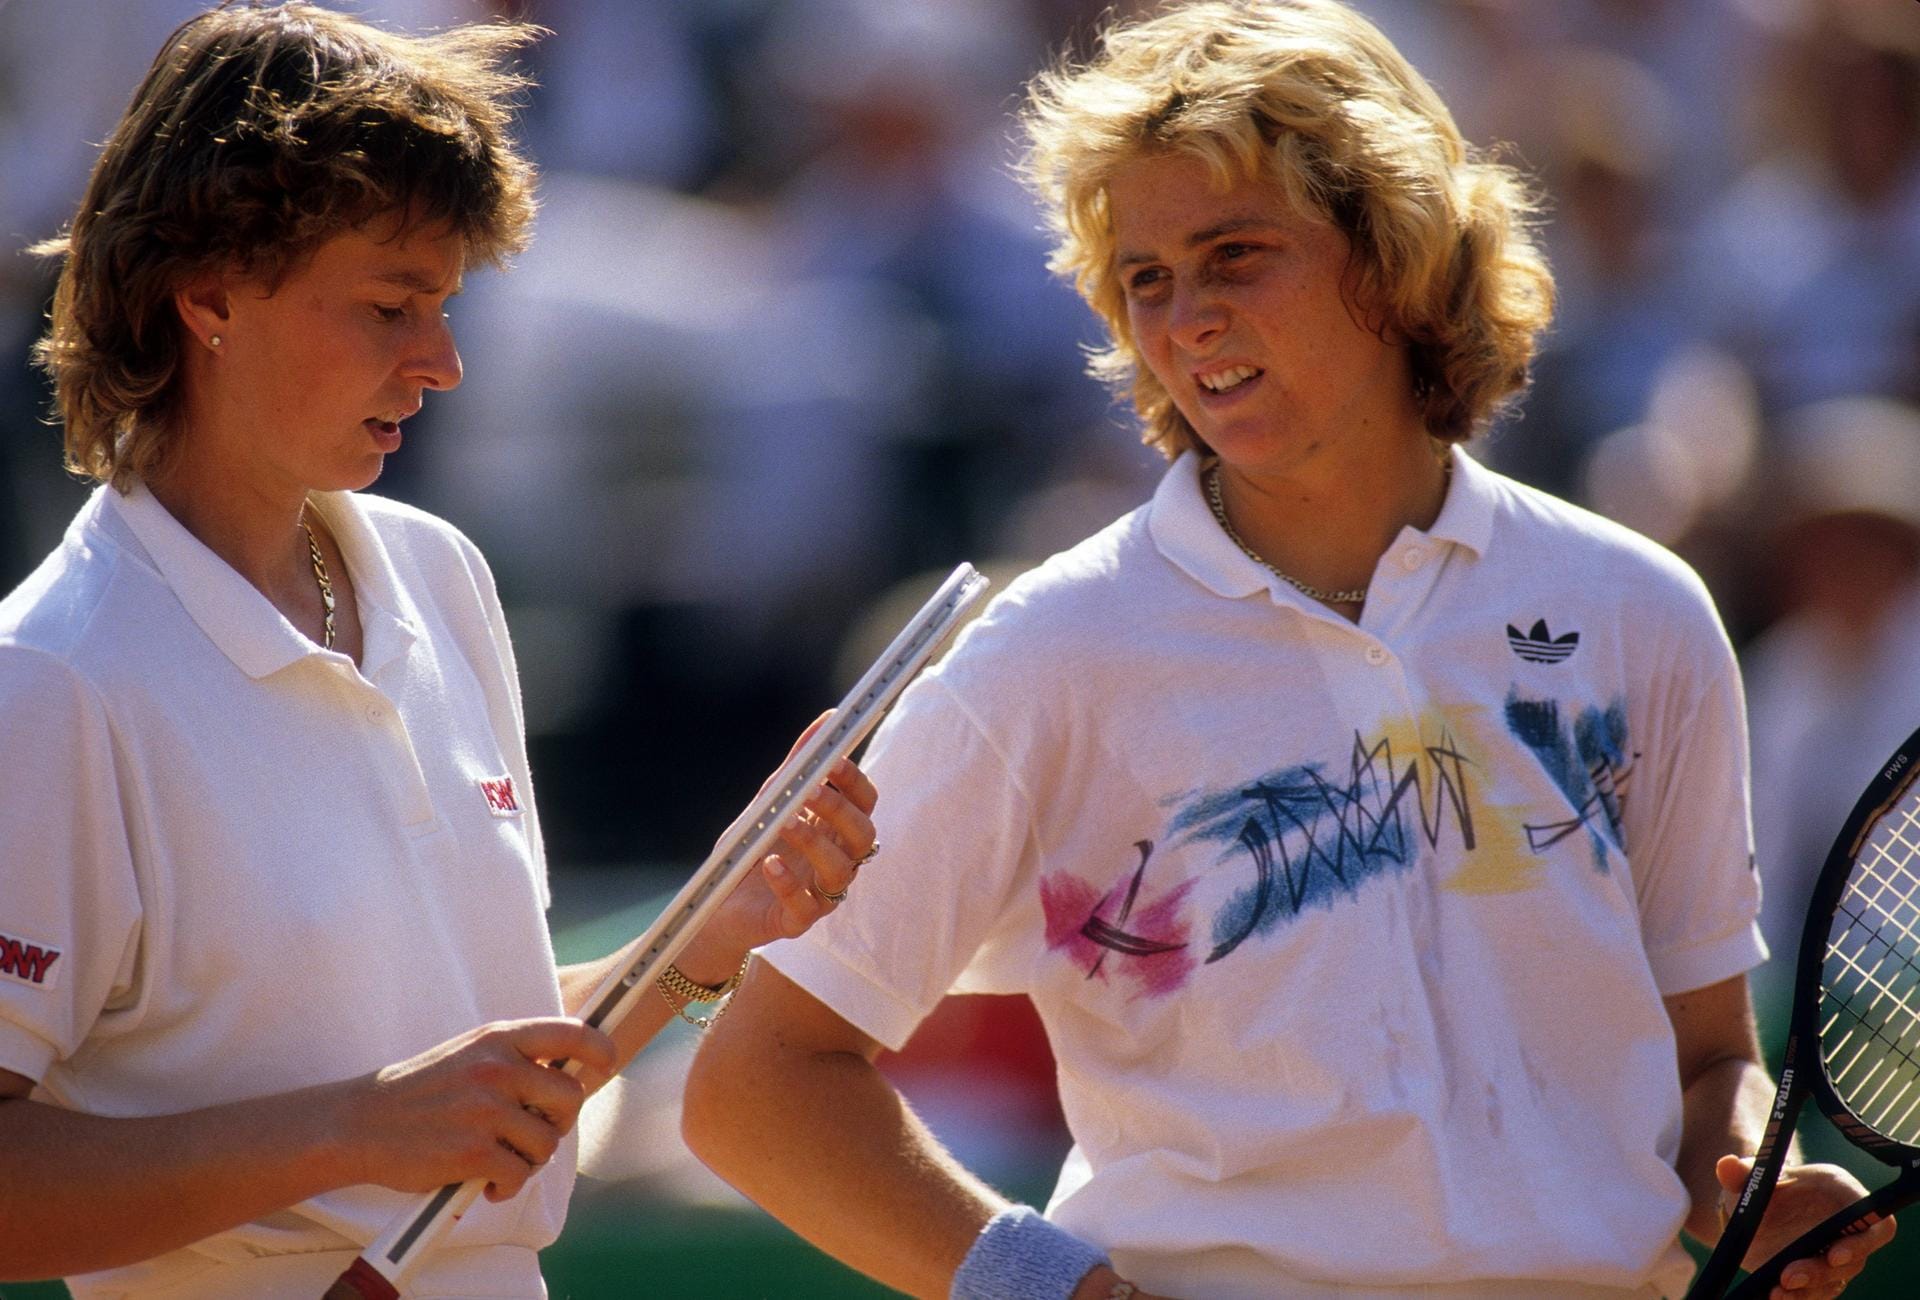 Claudia Kohde-Kilsch (r.) holte zwei Grand-Slam-Titel in ihrer Karriere. Beide im Doppel und beide an der Seite der Tschechoslowakin Helena Sukova (l.). Zunächst triumphierte das Duo 1985 bei US Open, 1987 war es auch auf dem heiligen Rasen von Wimbledon nicht zu schlagen.